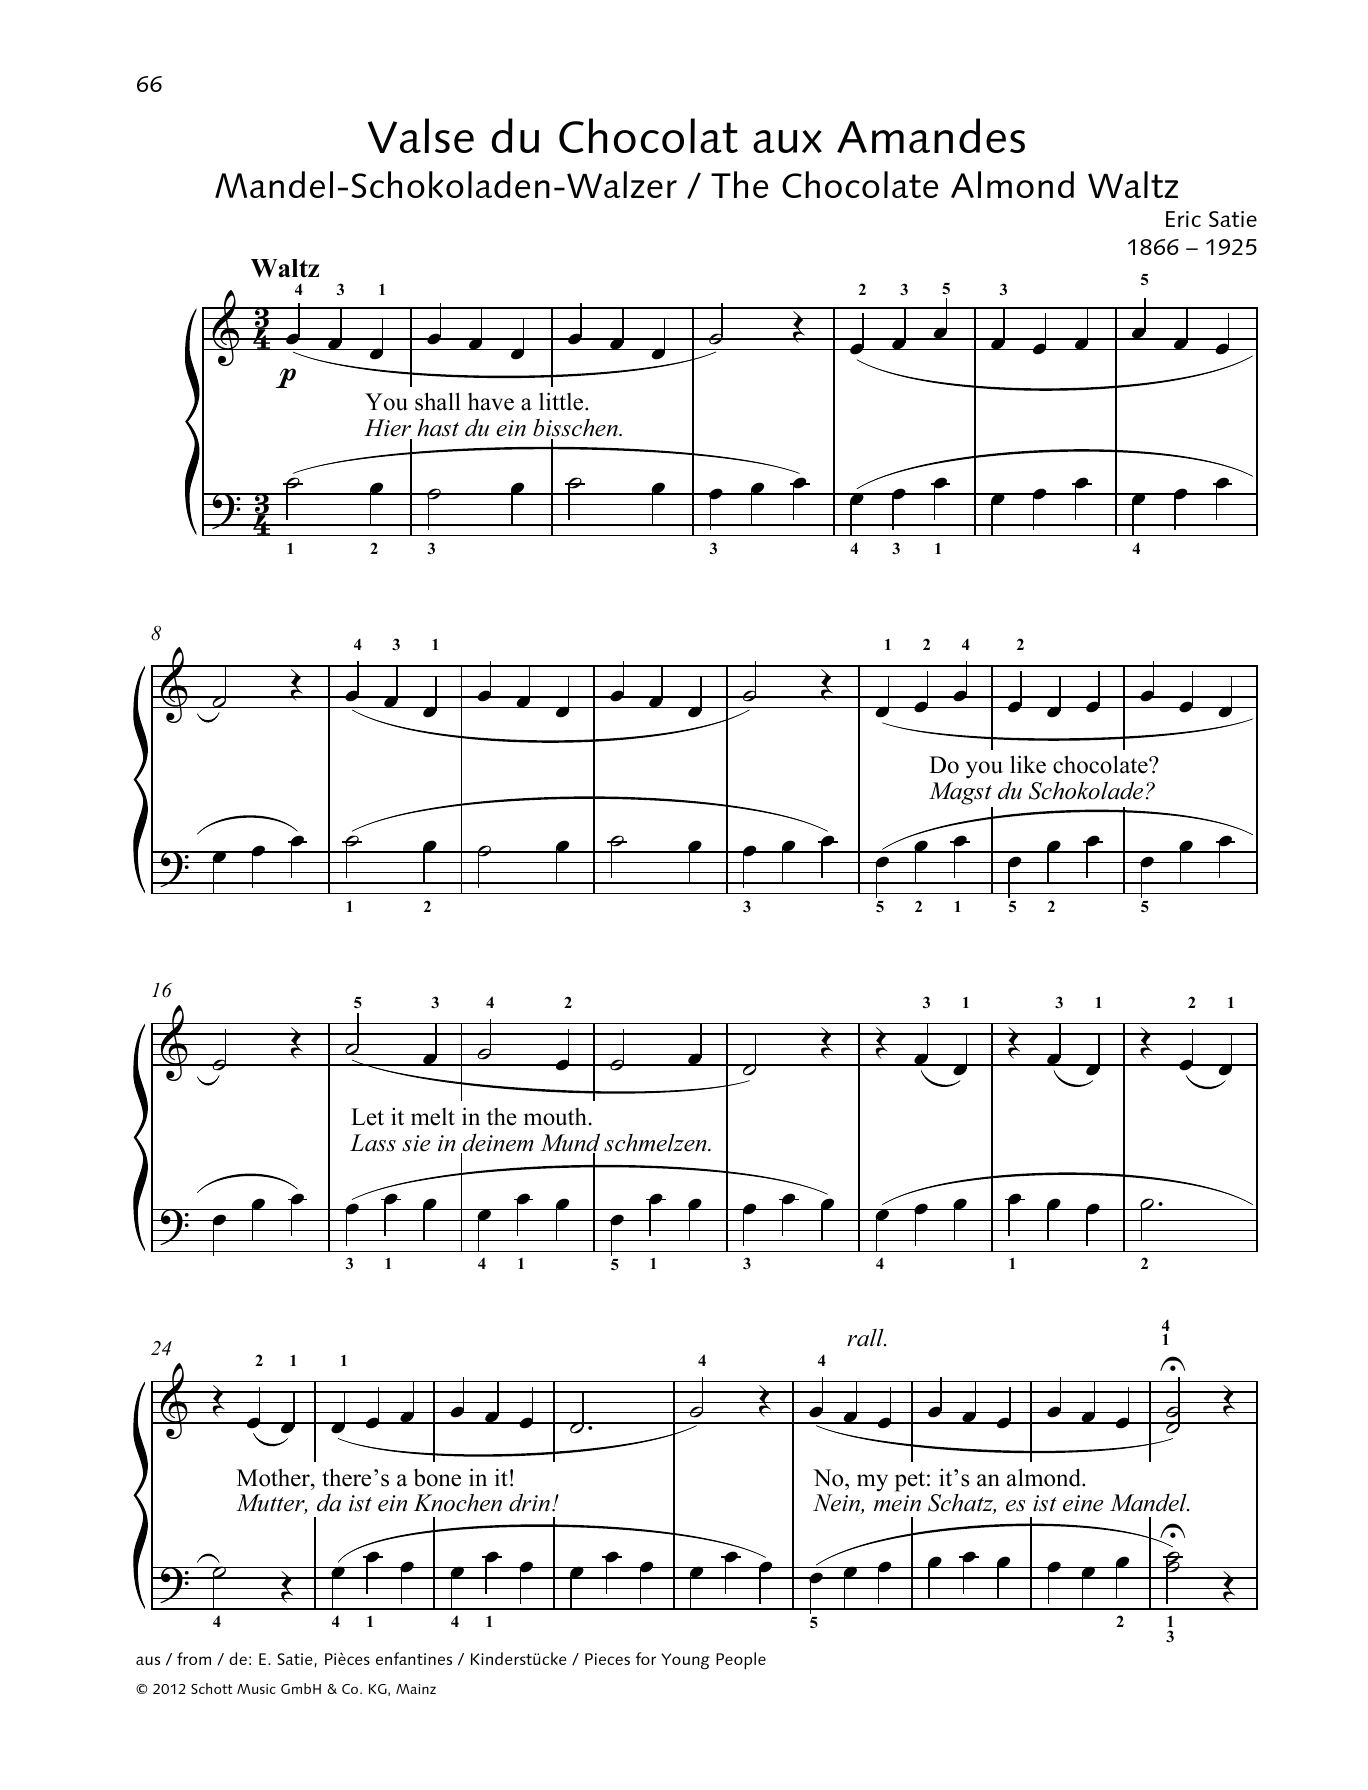 Download Erik Satie The Chocolate Almond Waltz Sheet Music